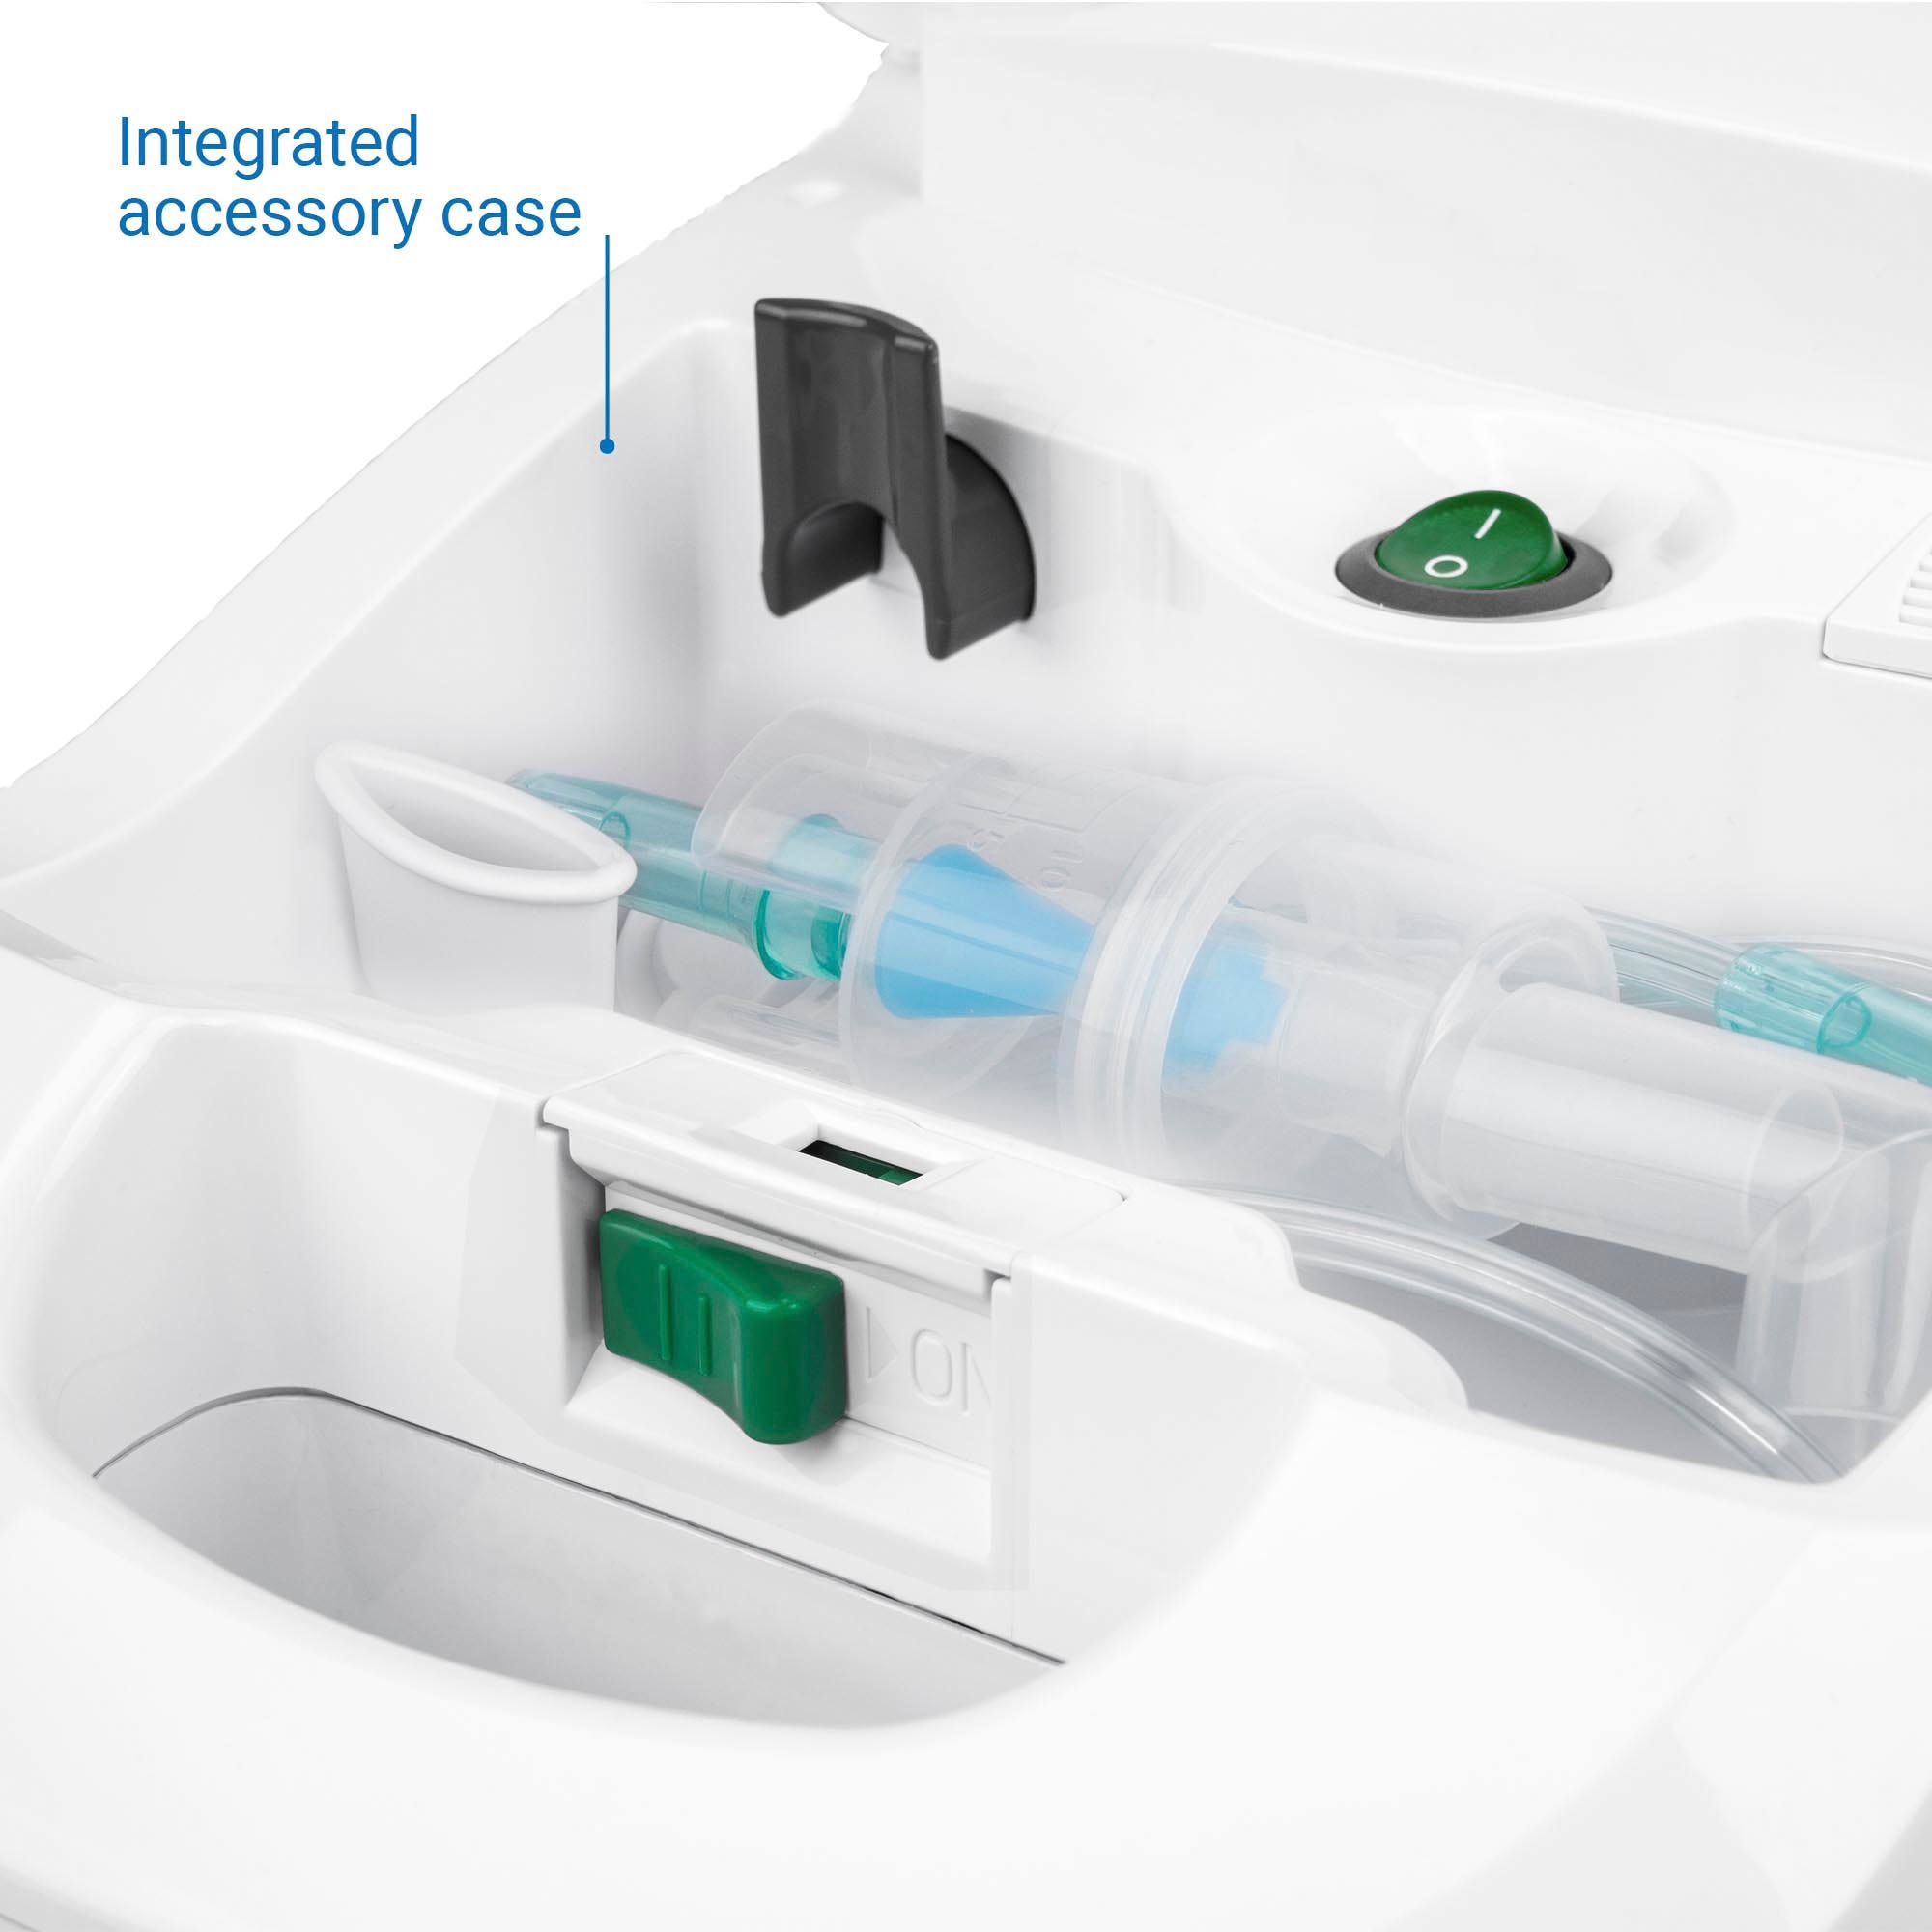 Medisana Inhalationsgerät »IN 550 Pro«